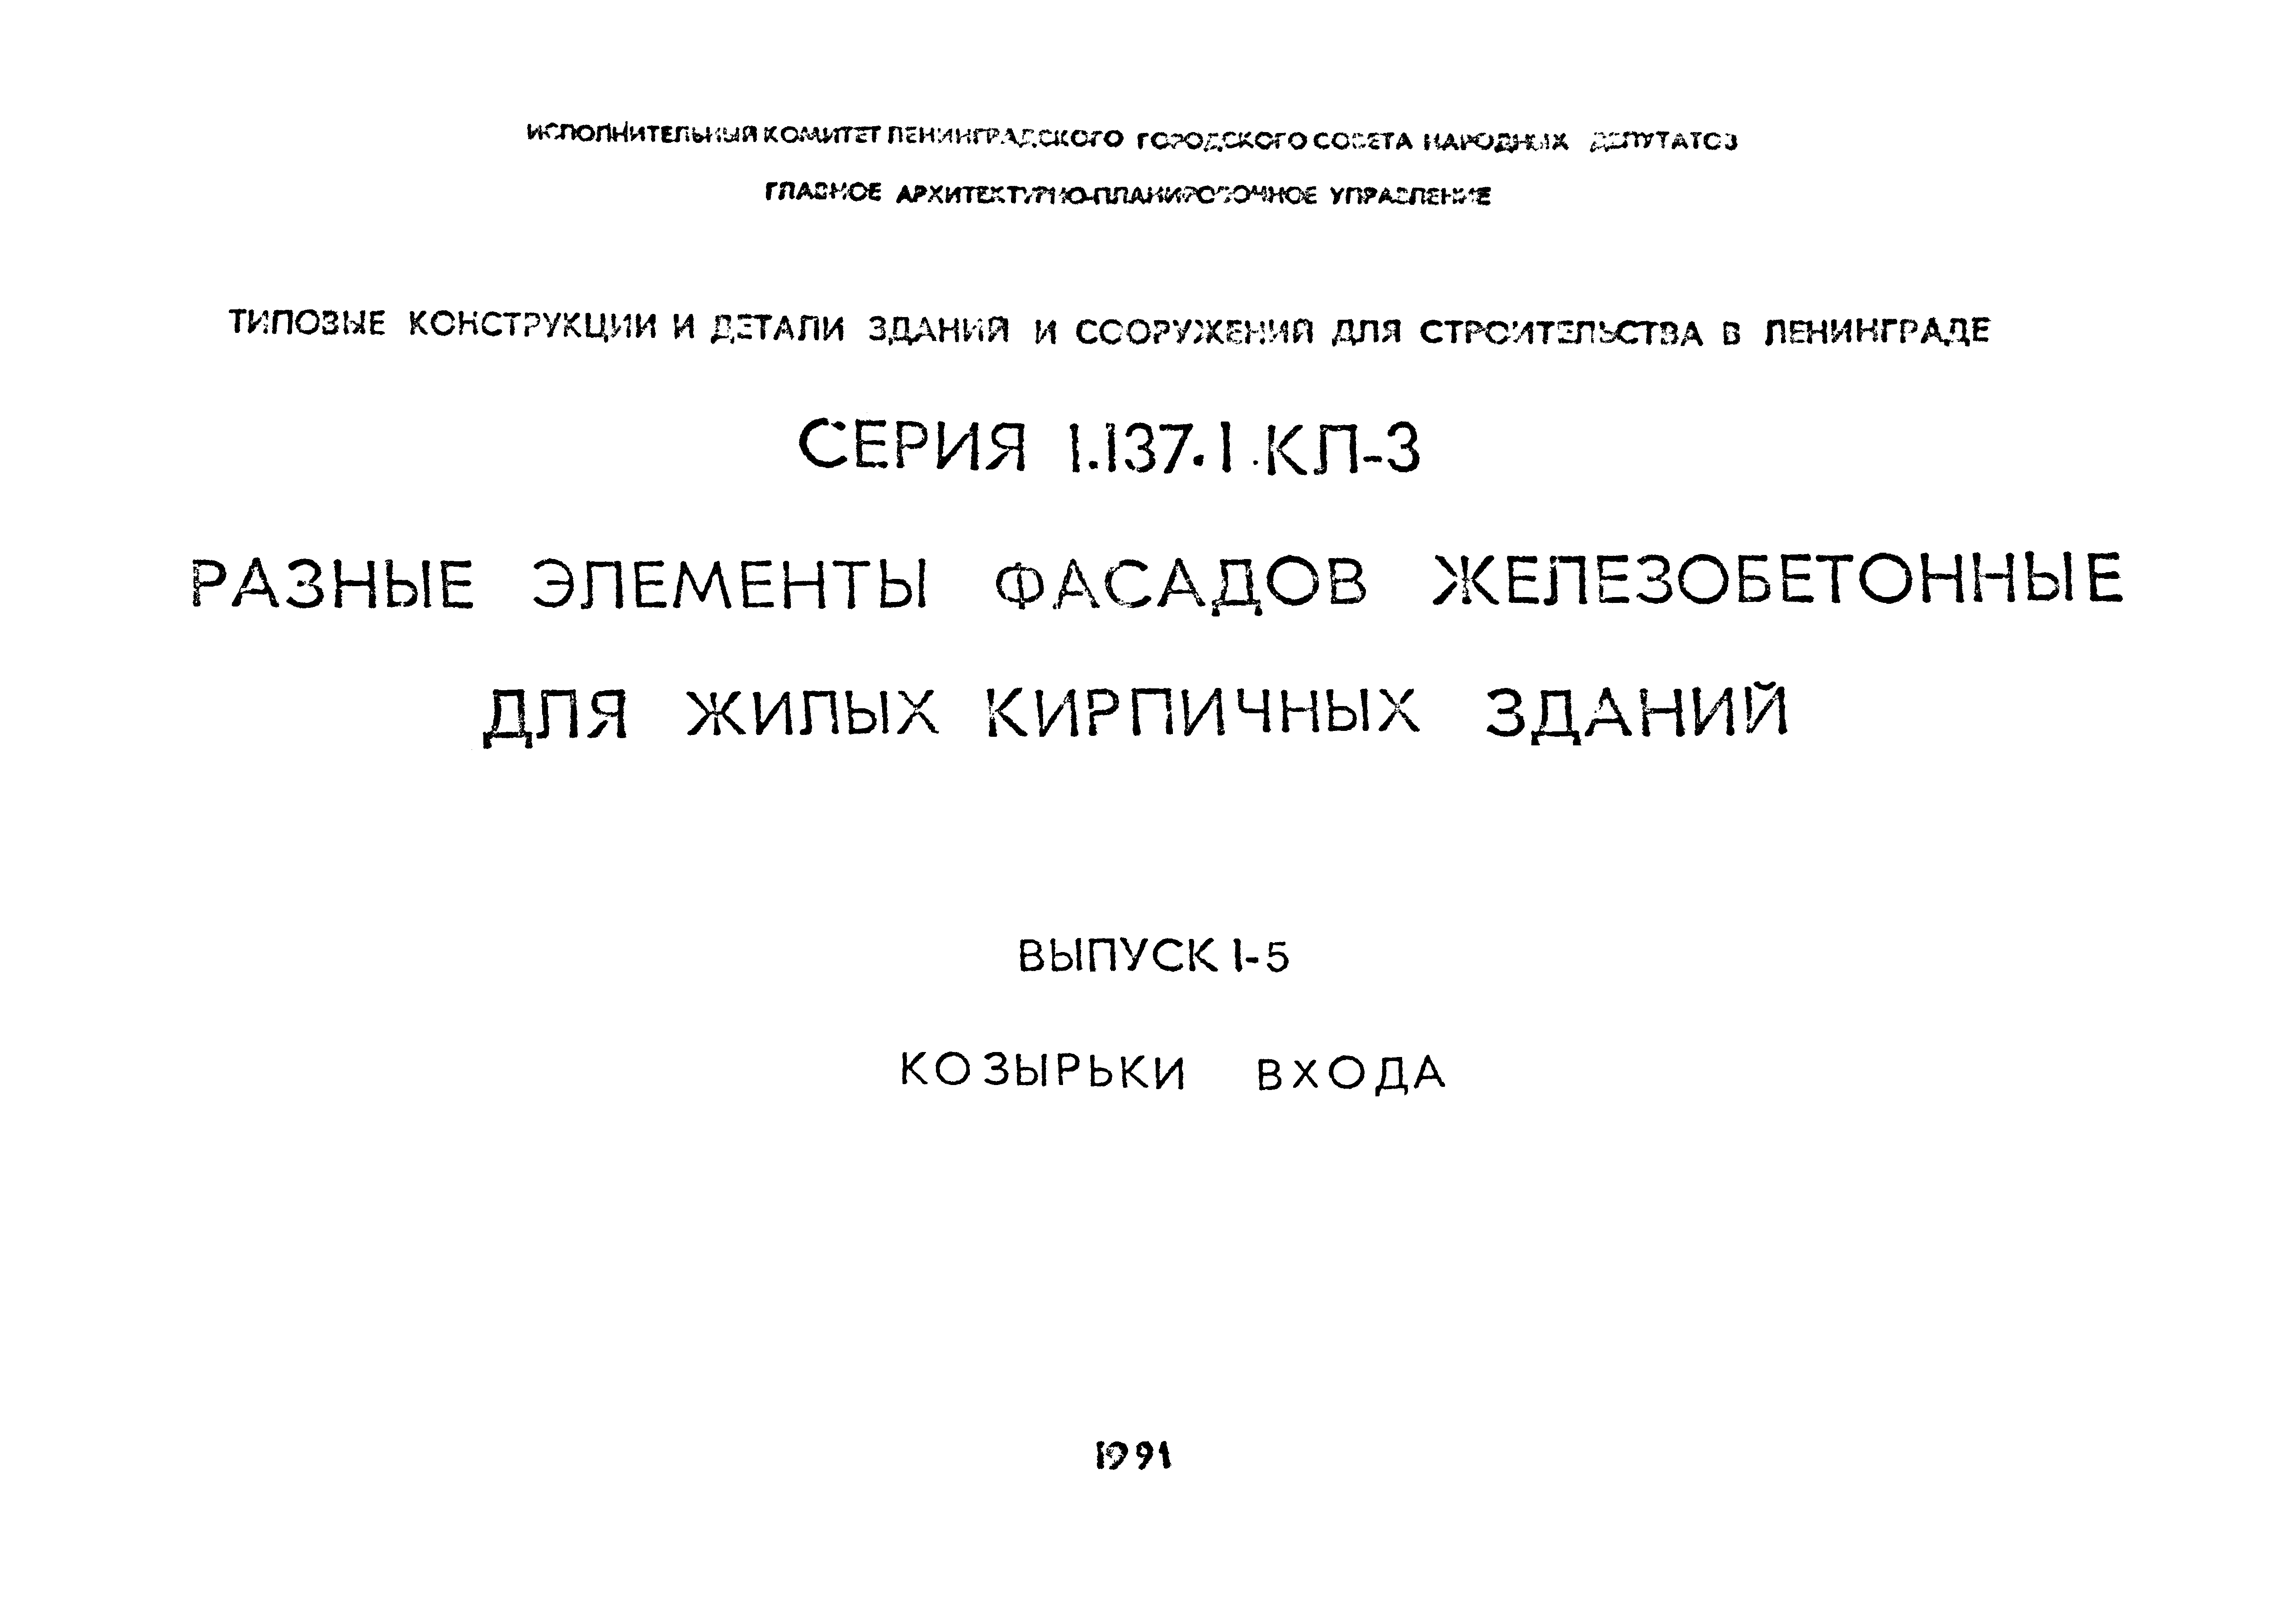 Серия 1.137.1 КЛ-3